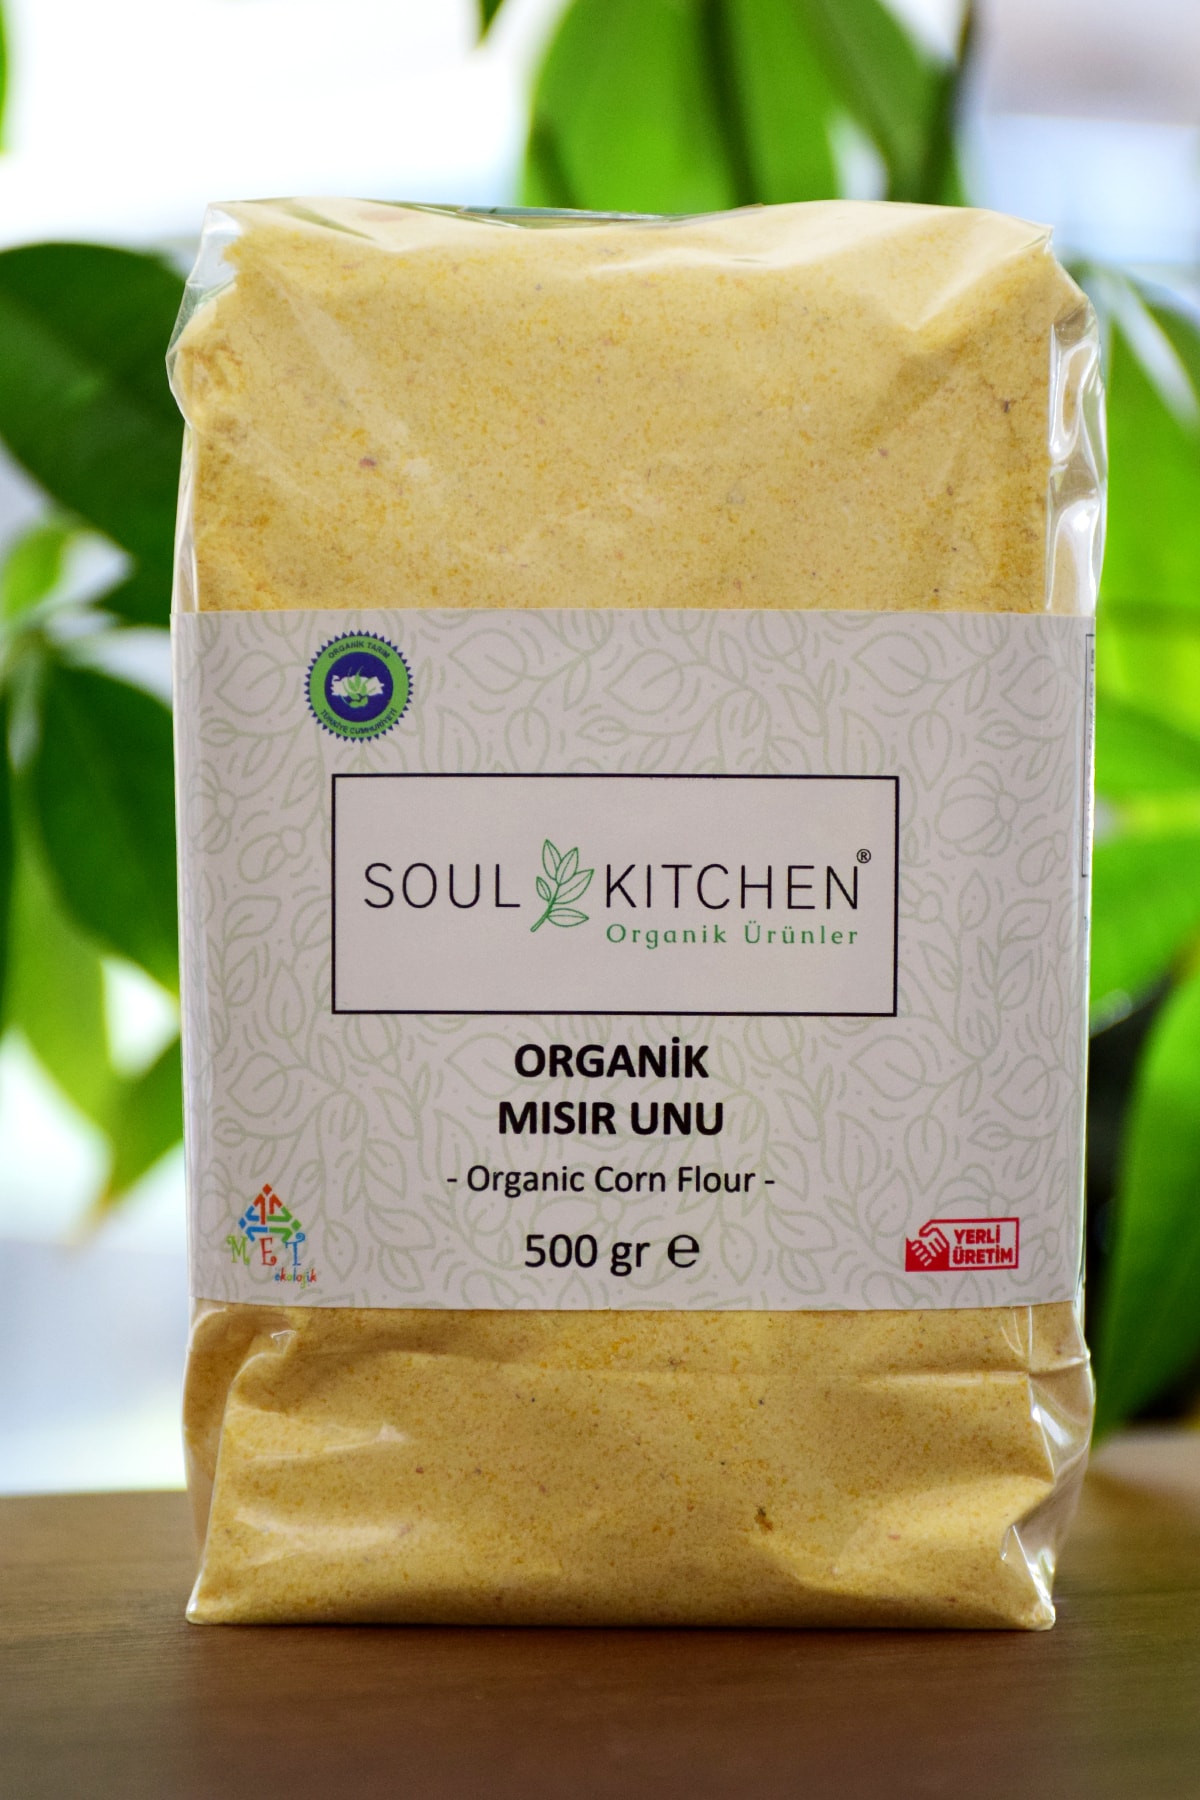 Soul Kitchen Organik Ürünler Organik Mısır Unu 500gr